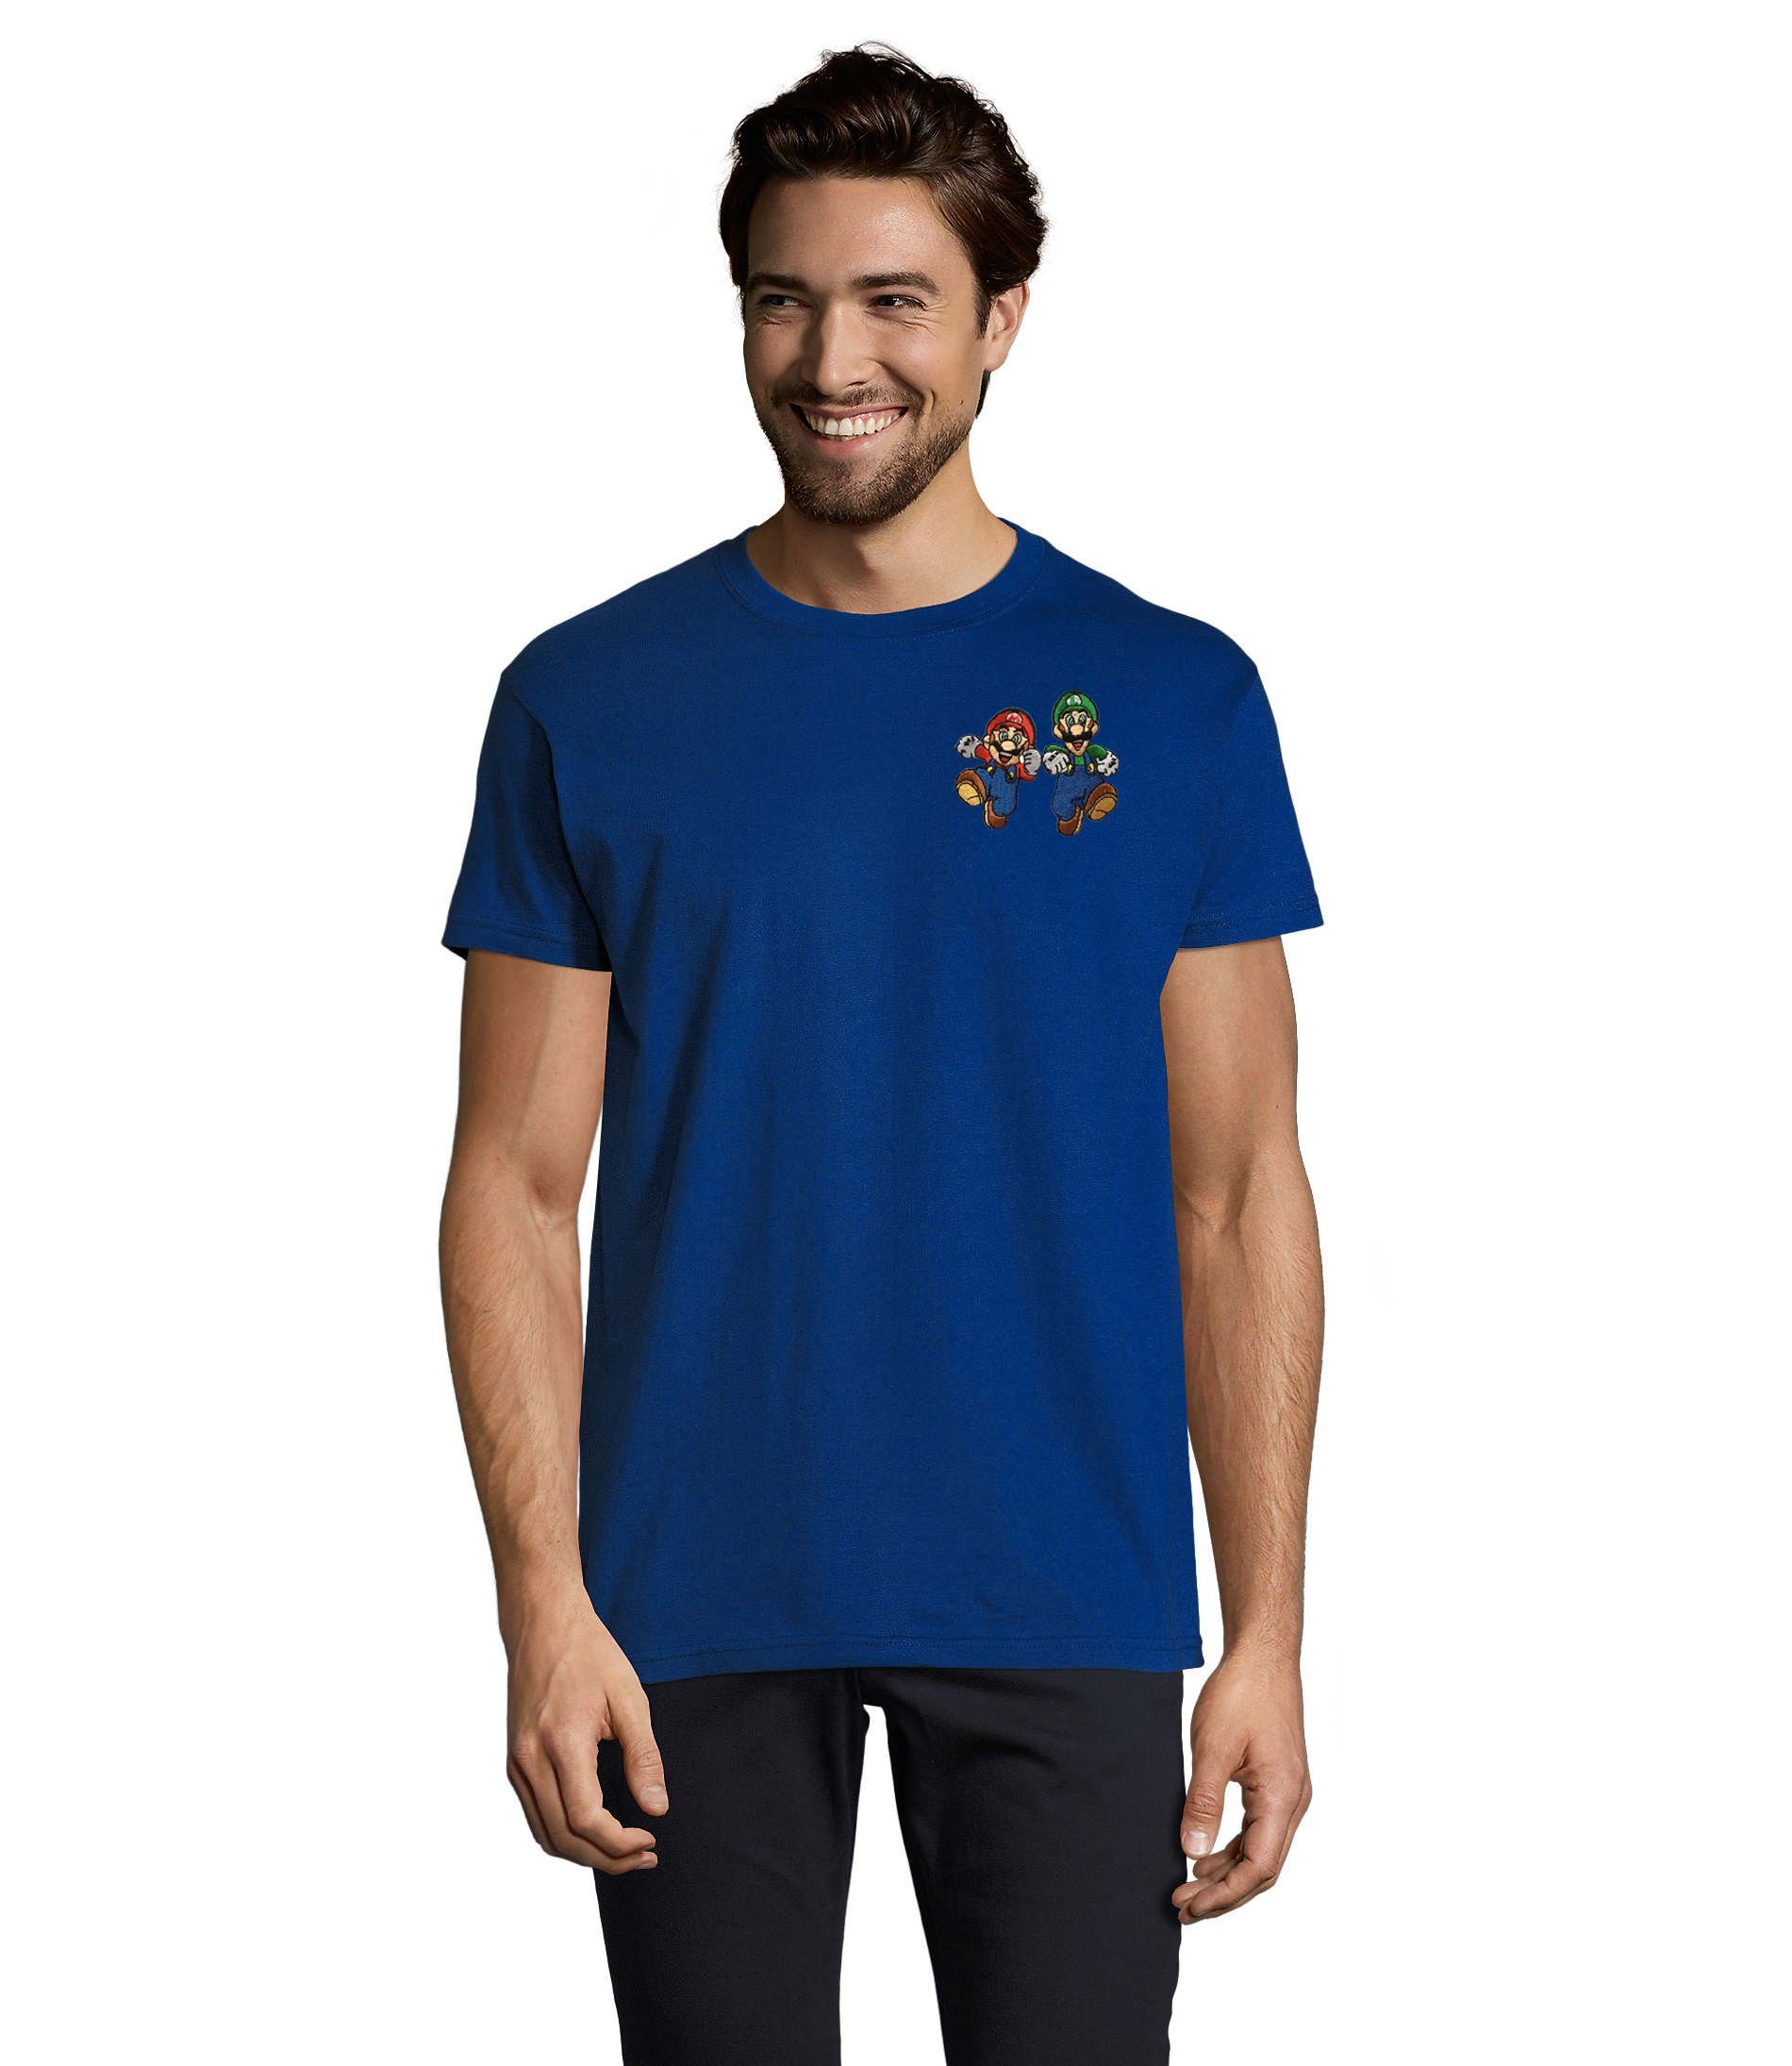 Blondie & Blau & Konsole Luigi T-Shirt Mario Stick Brownie Peach bestickt Nintendo Herren Gaming Brust